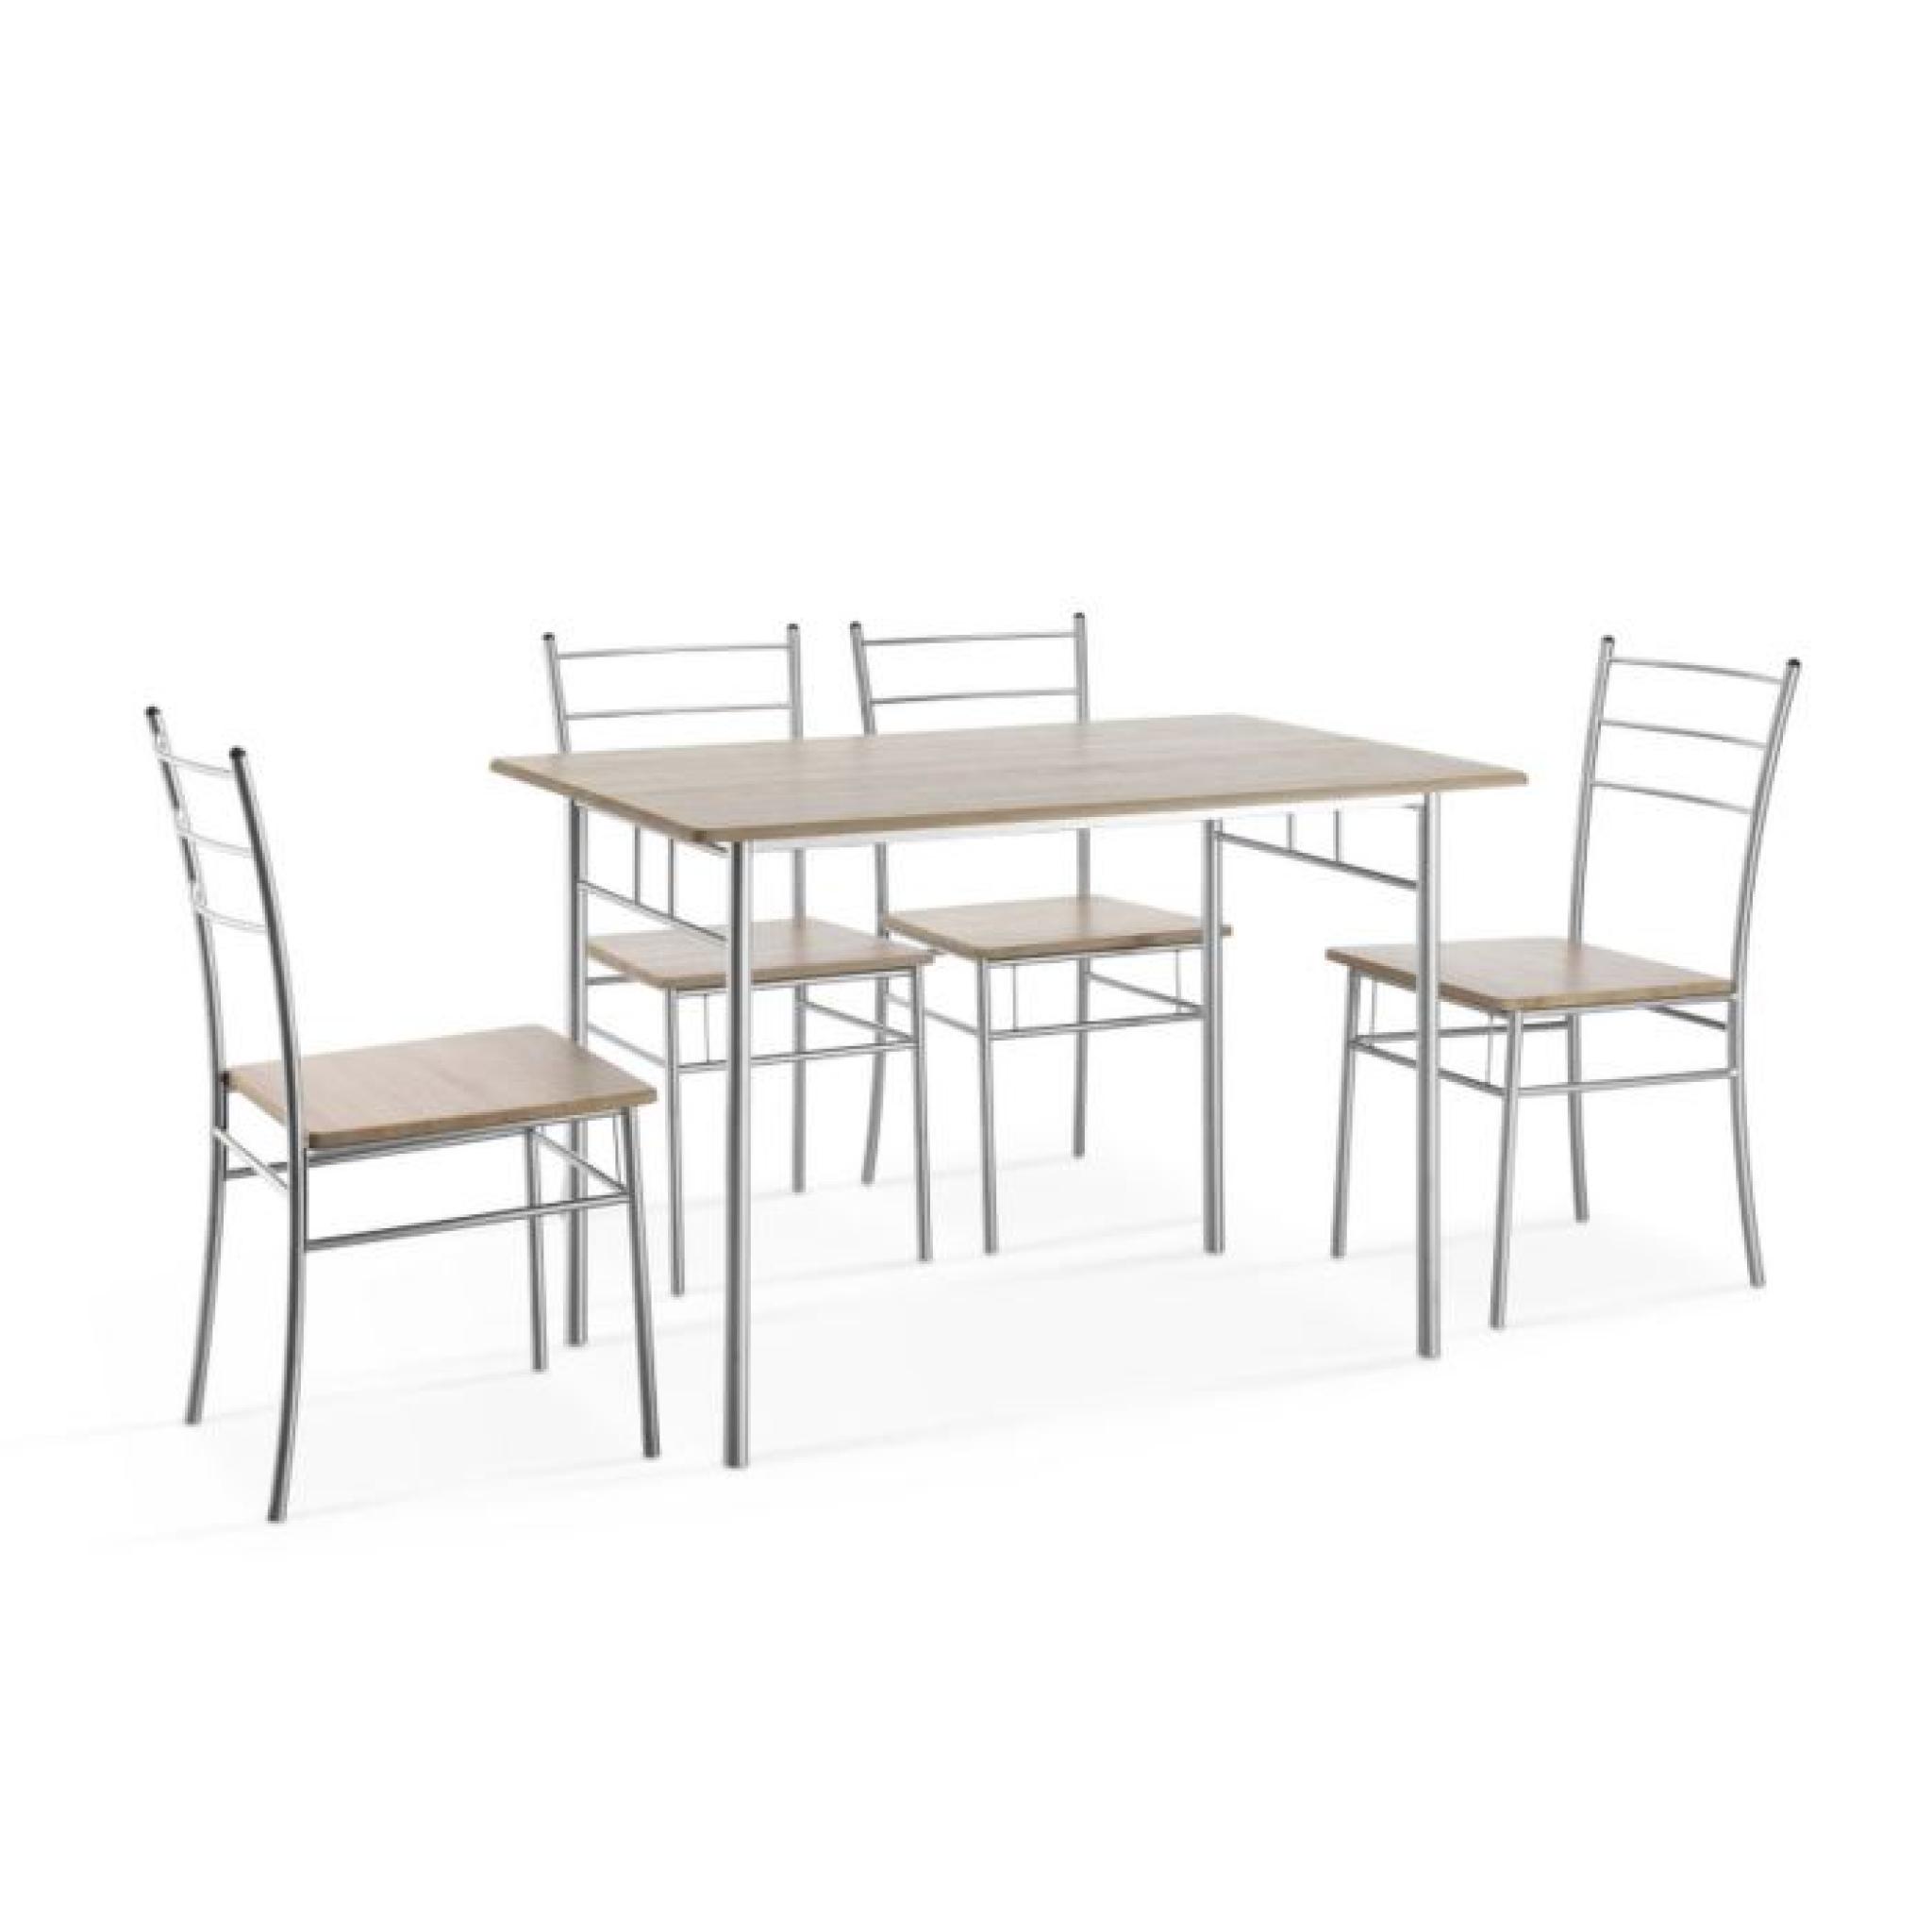 CHILY Ensemble repas coloris chêne 5 pièces 1 table + 4 chaises pas cher